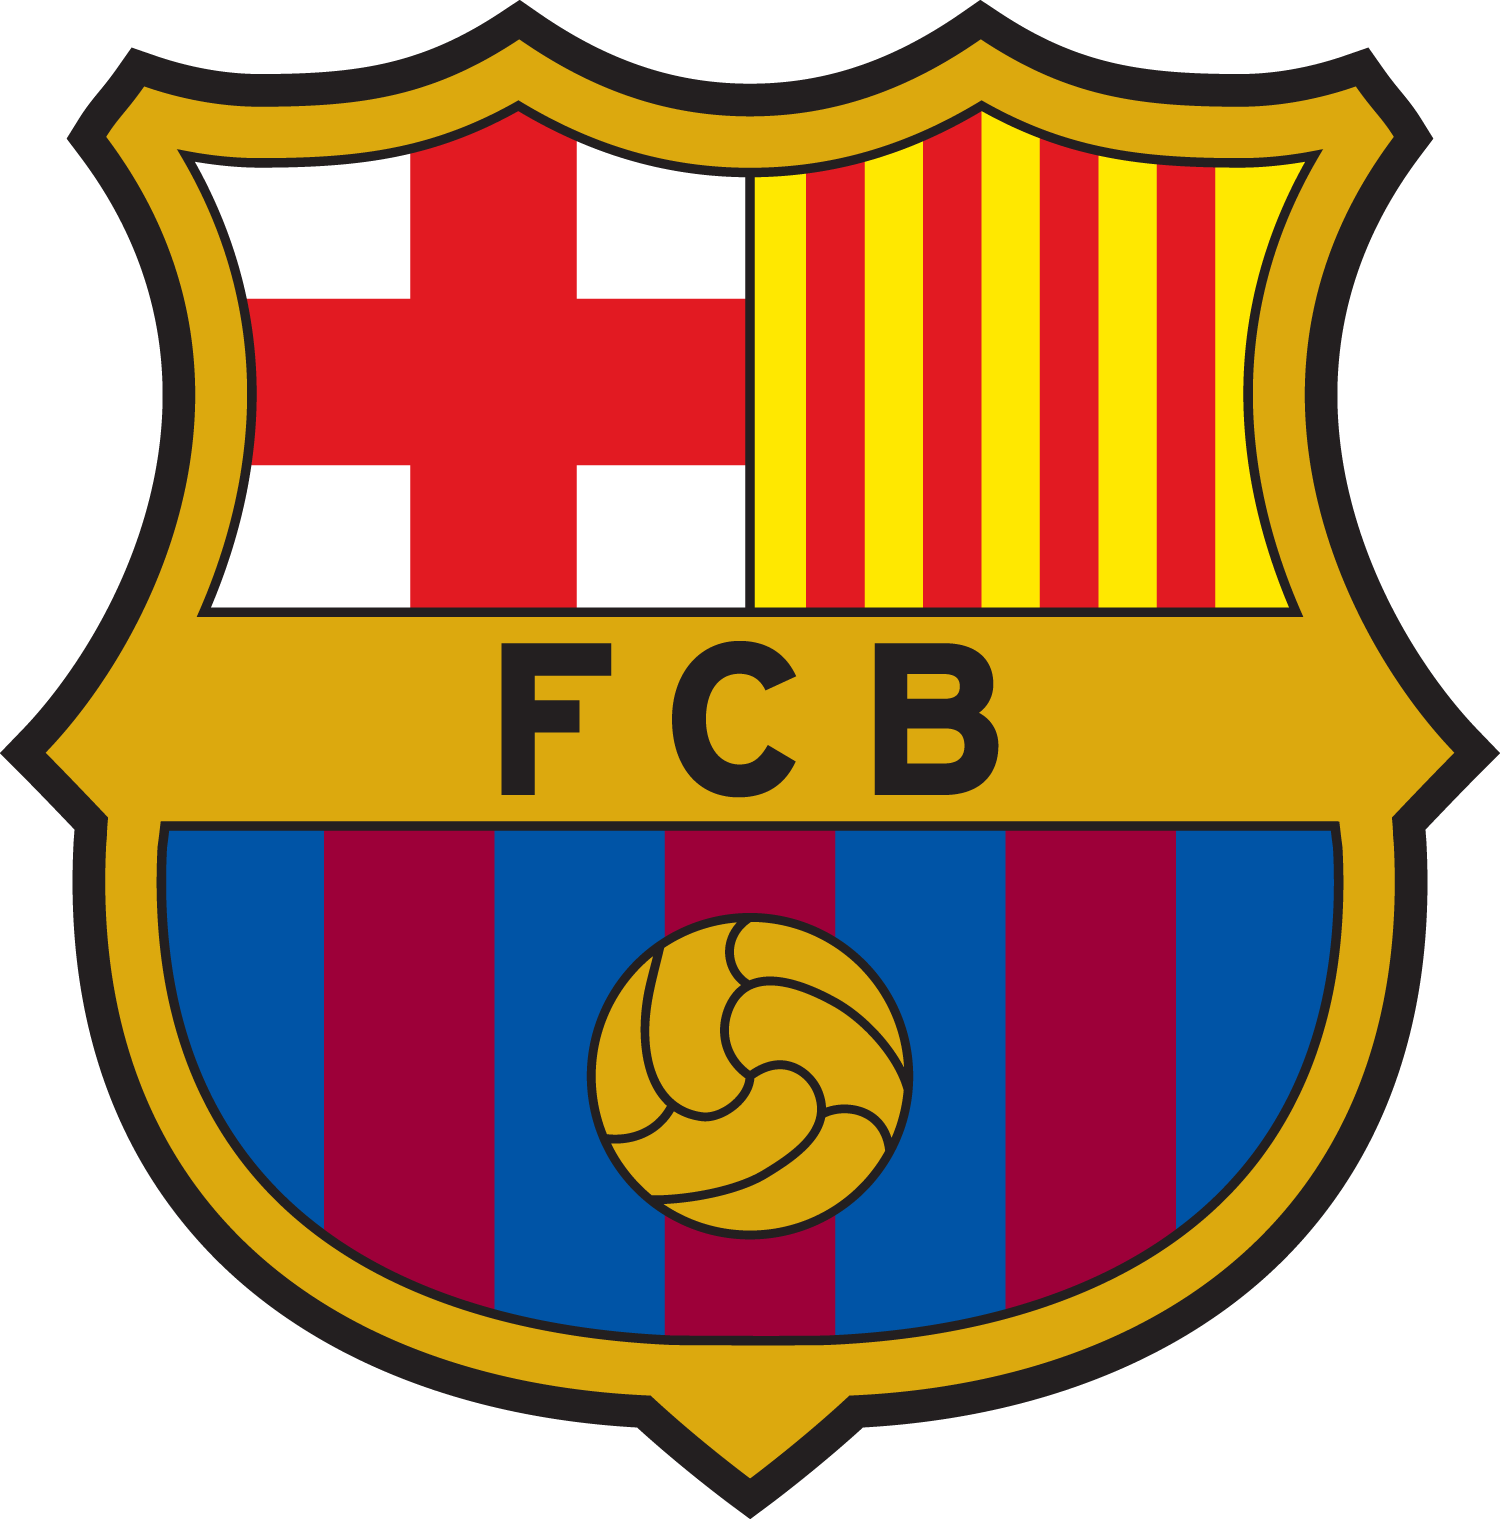 FCバルセロナのロゴ